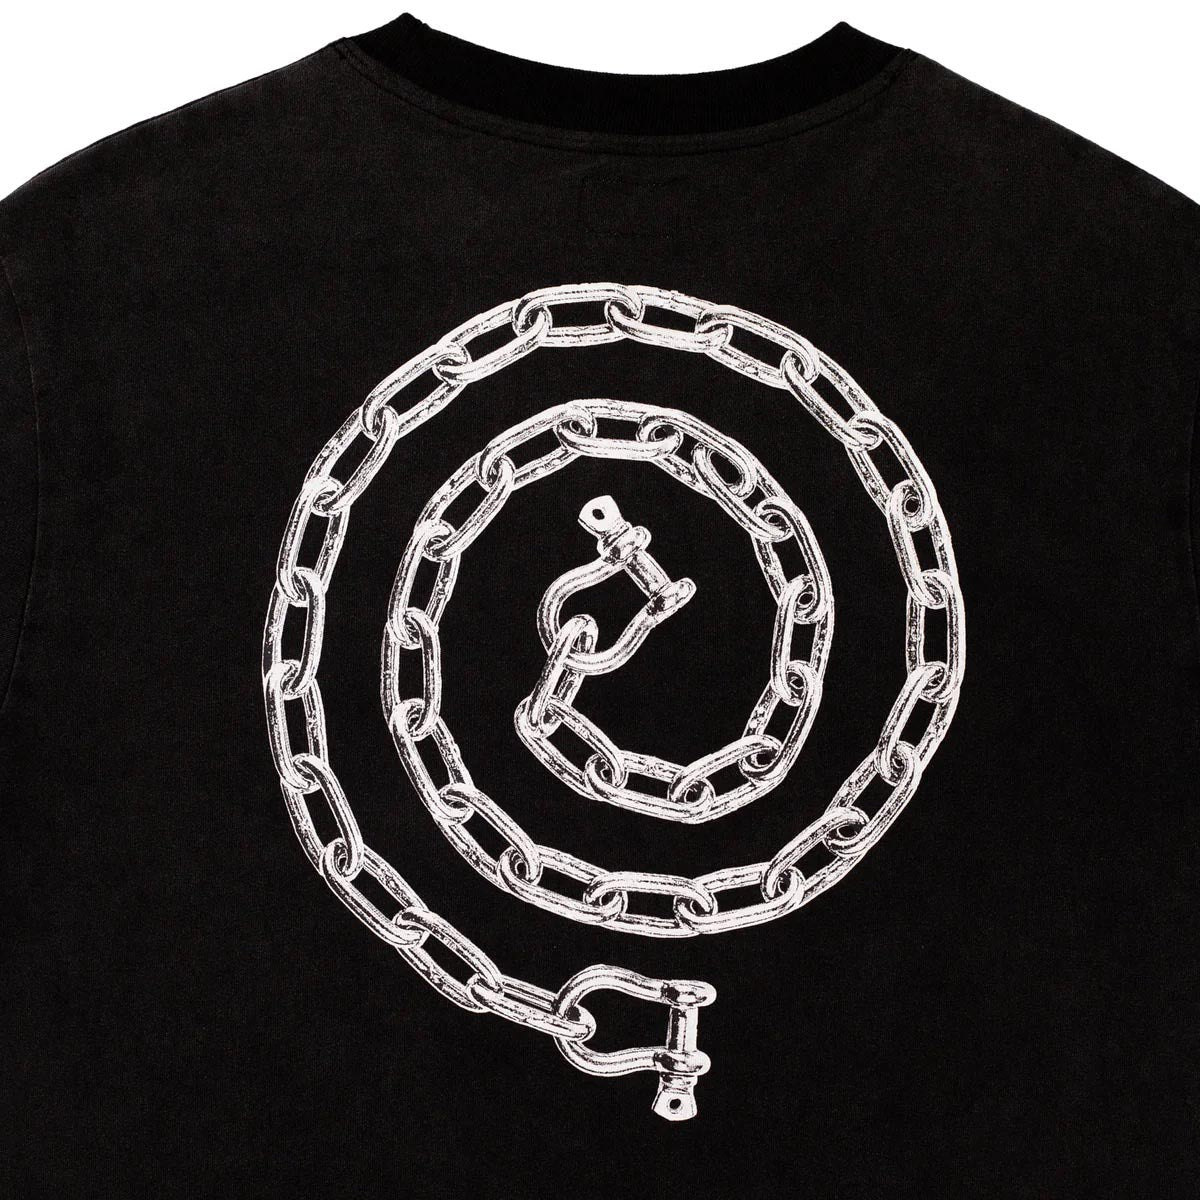 Hoddle Lock T-Shirt - Black Wash image 4